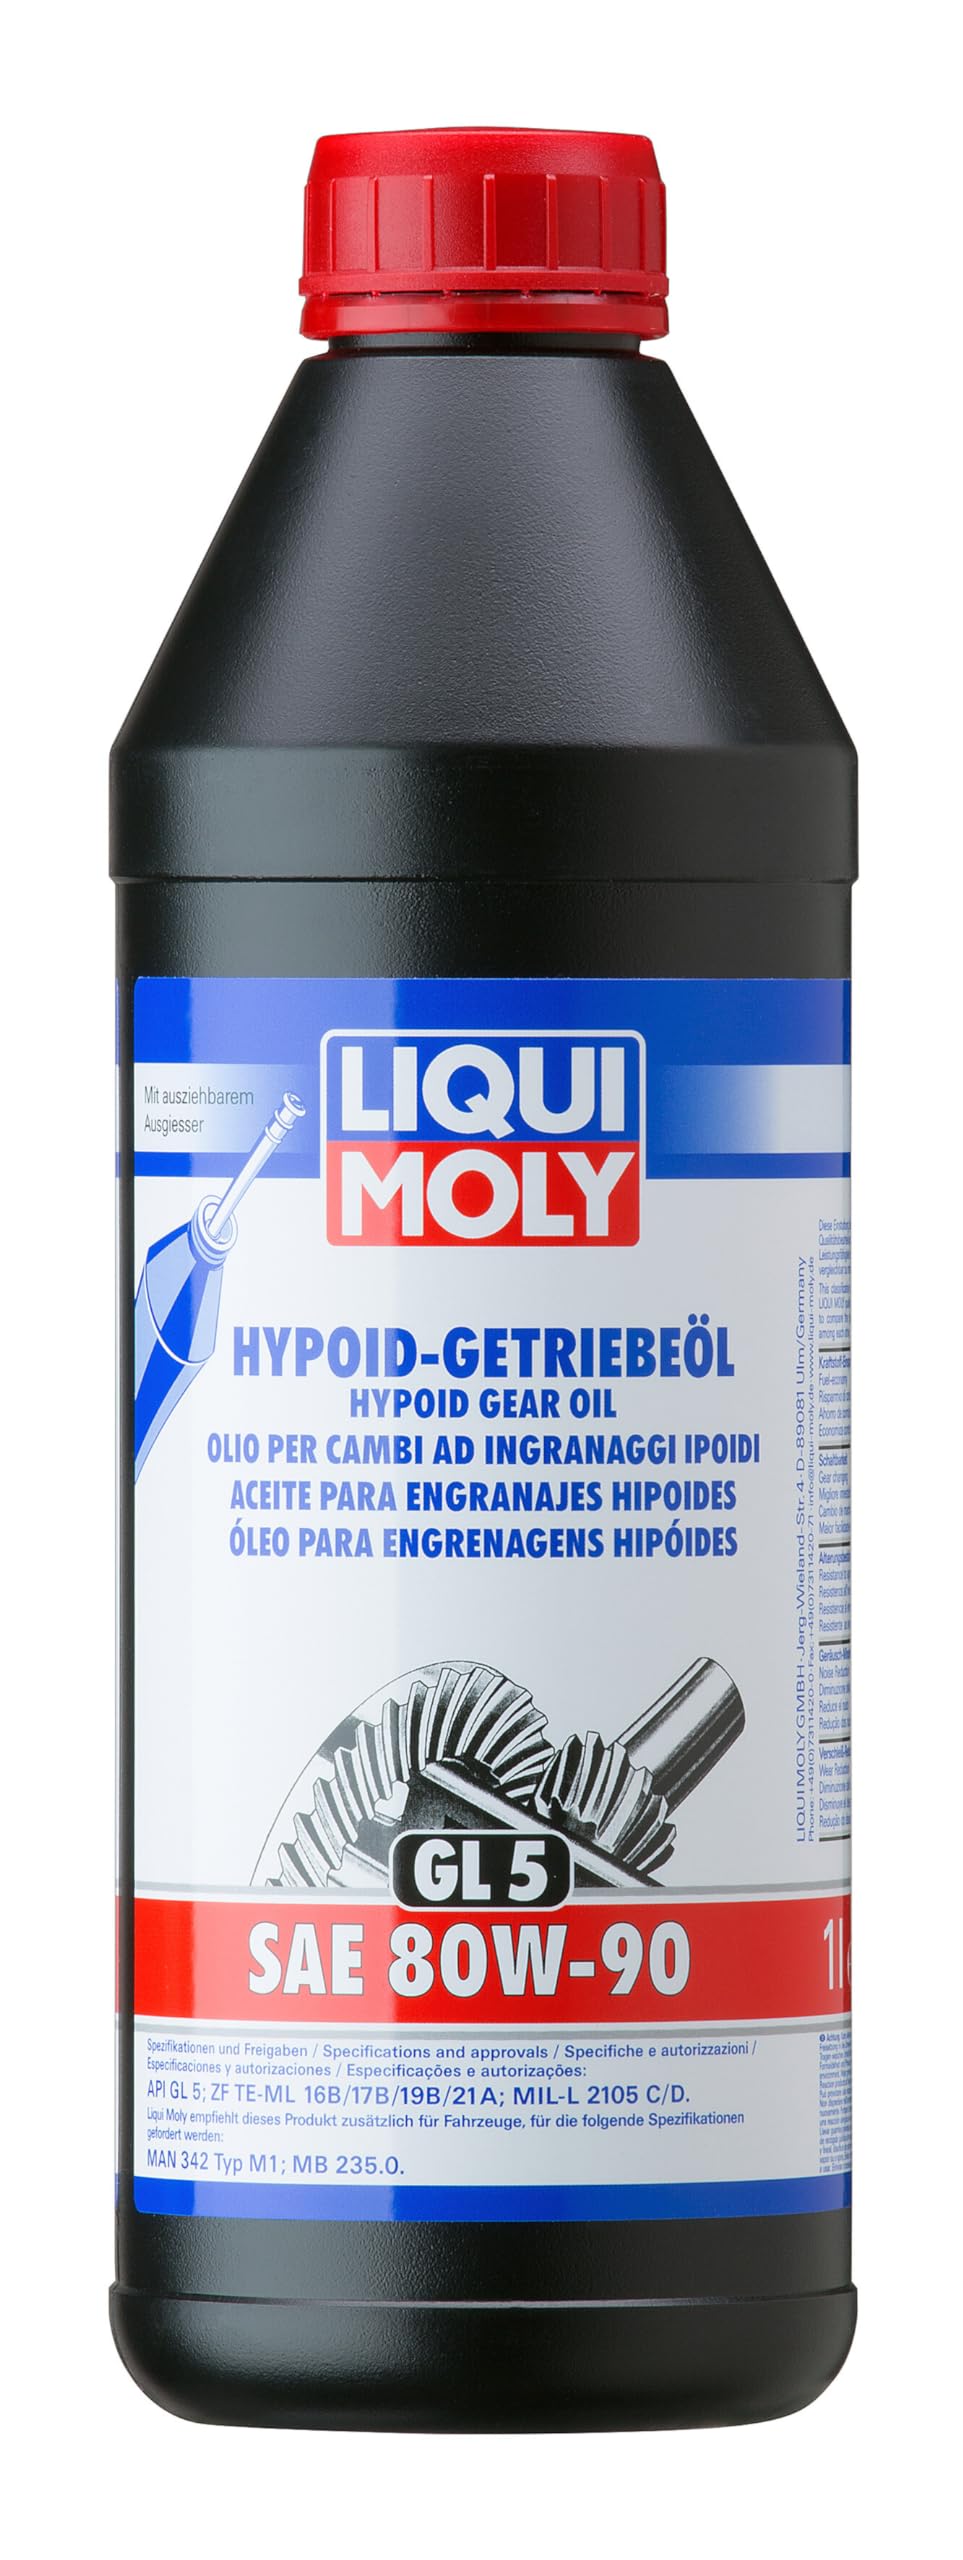 LIQUI MOLY Hypoid-Getriebeöl (GL5) SAE 80W-90 | 1 L | Getriebeöl | Hydrauliköl | Art.-Nr.: 4406 von Liqui Moly